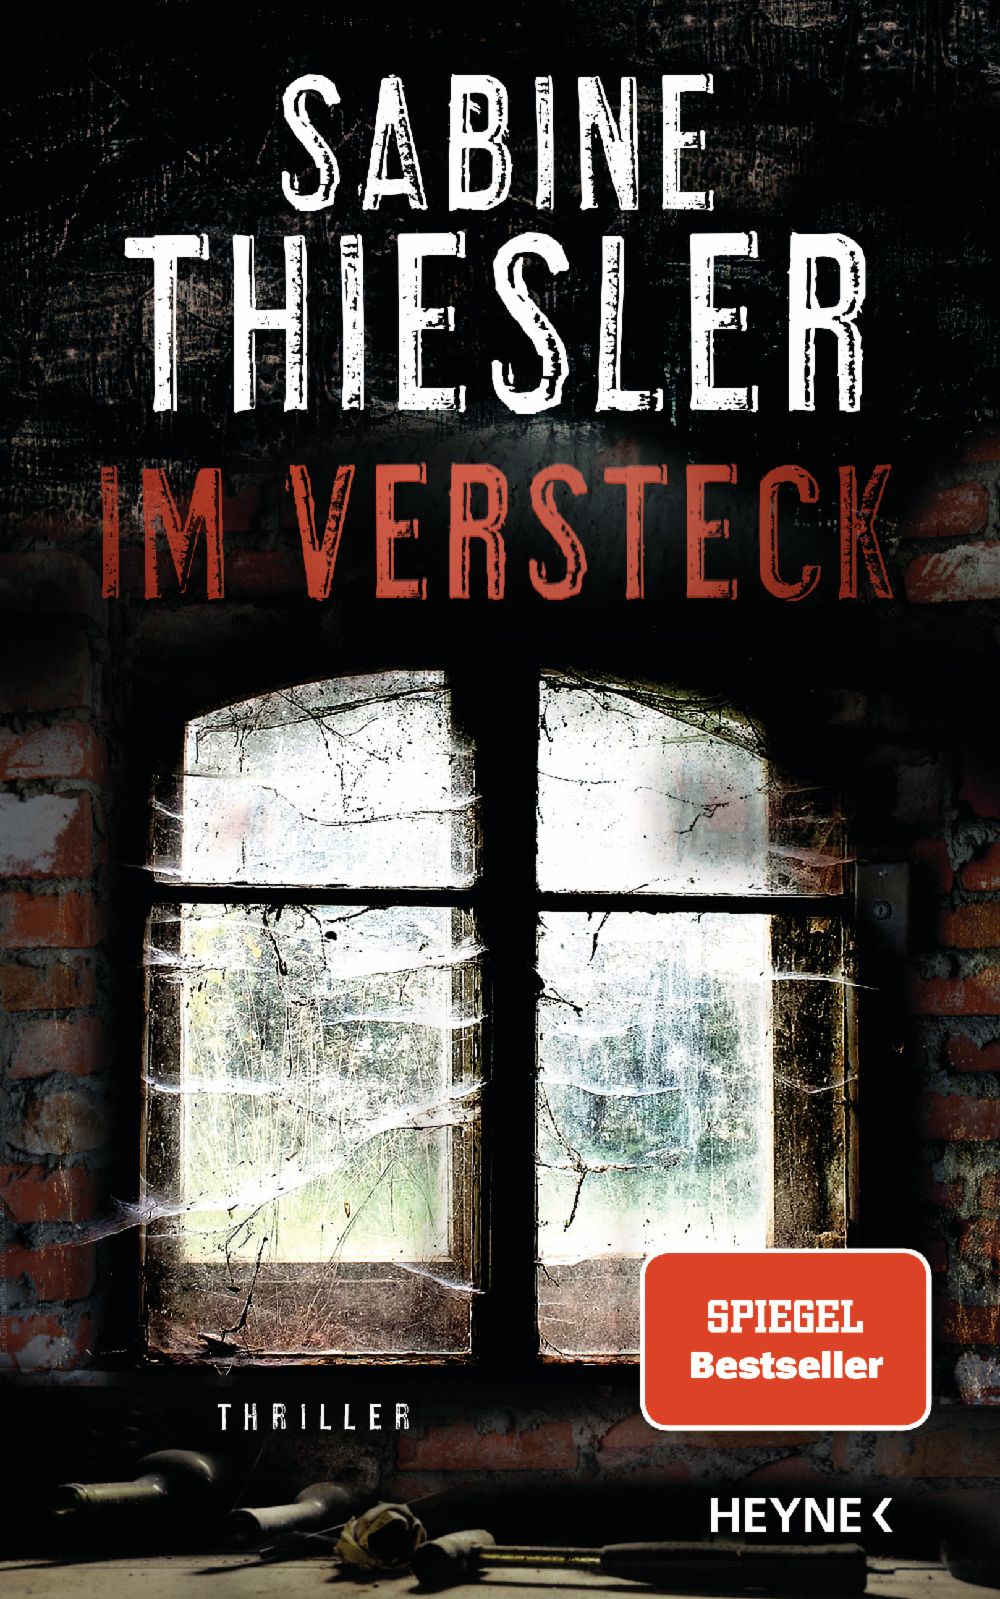 Buchkritik / Rezension "Im Versteck", Sabine Thiesler, Heyne Verlag. Aufwühlender Thriller mit ernsten Themen, spannend, aber manchmal fast nicht auszuhalten.